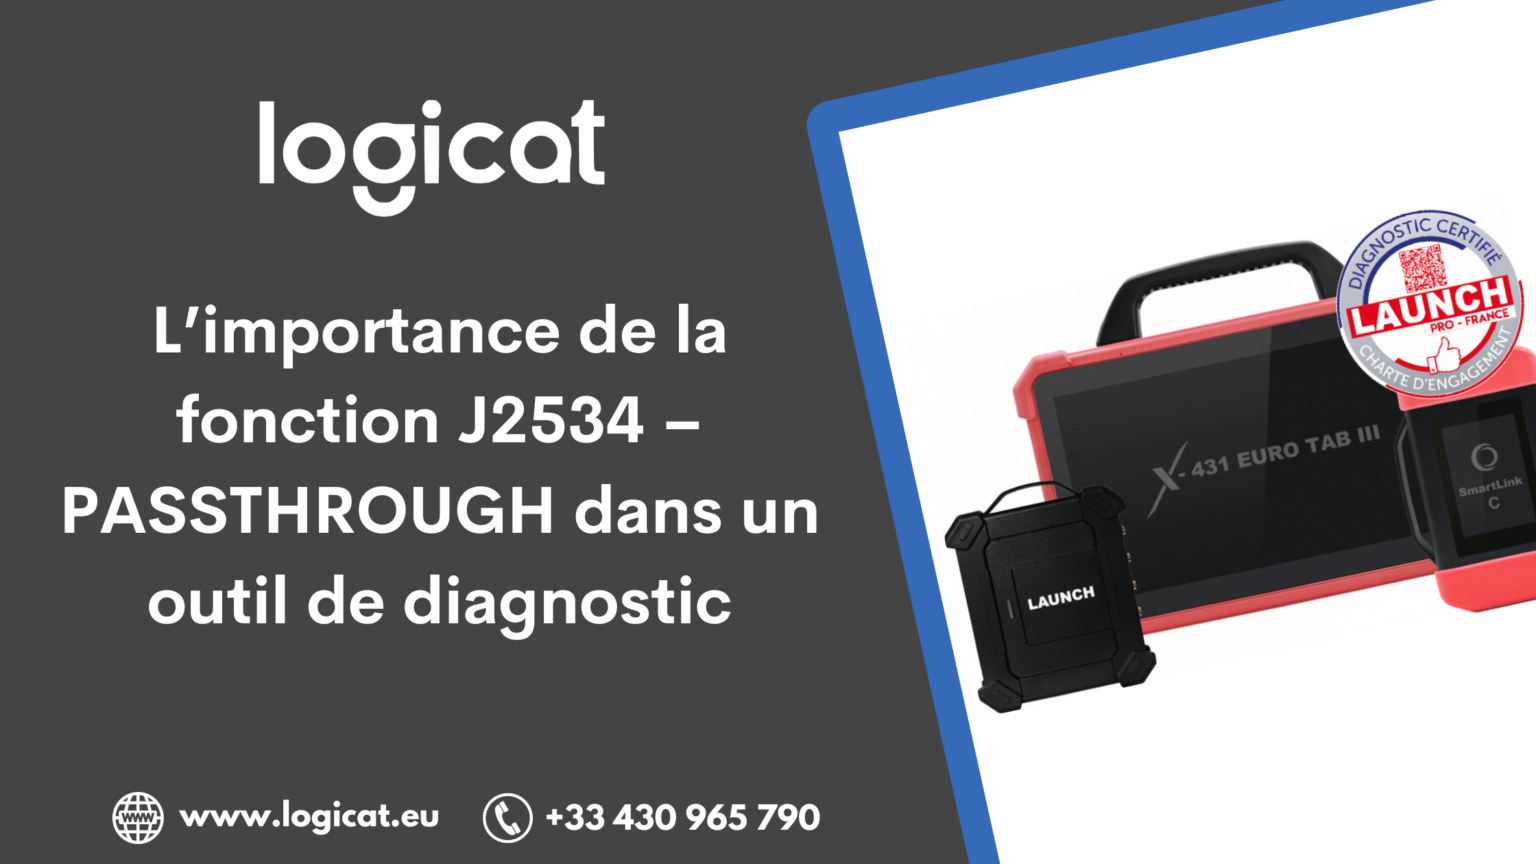 la fonction J2534 Logicat Launch France